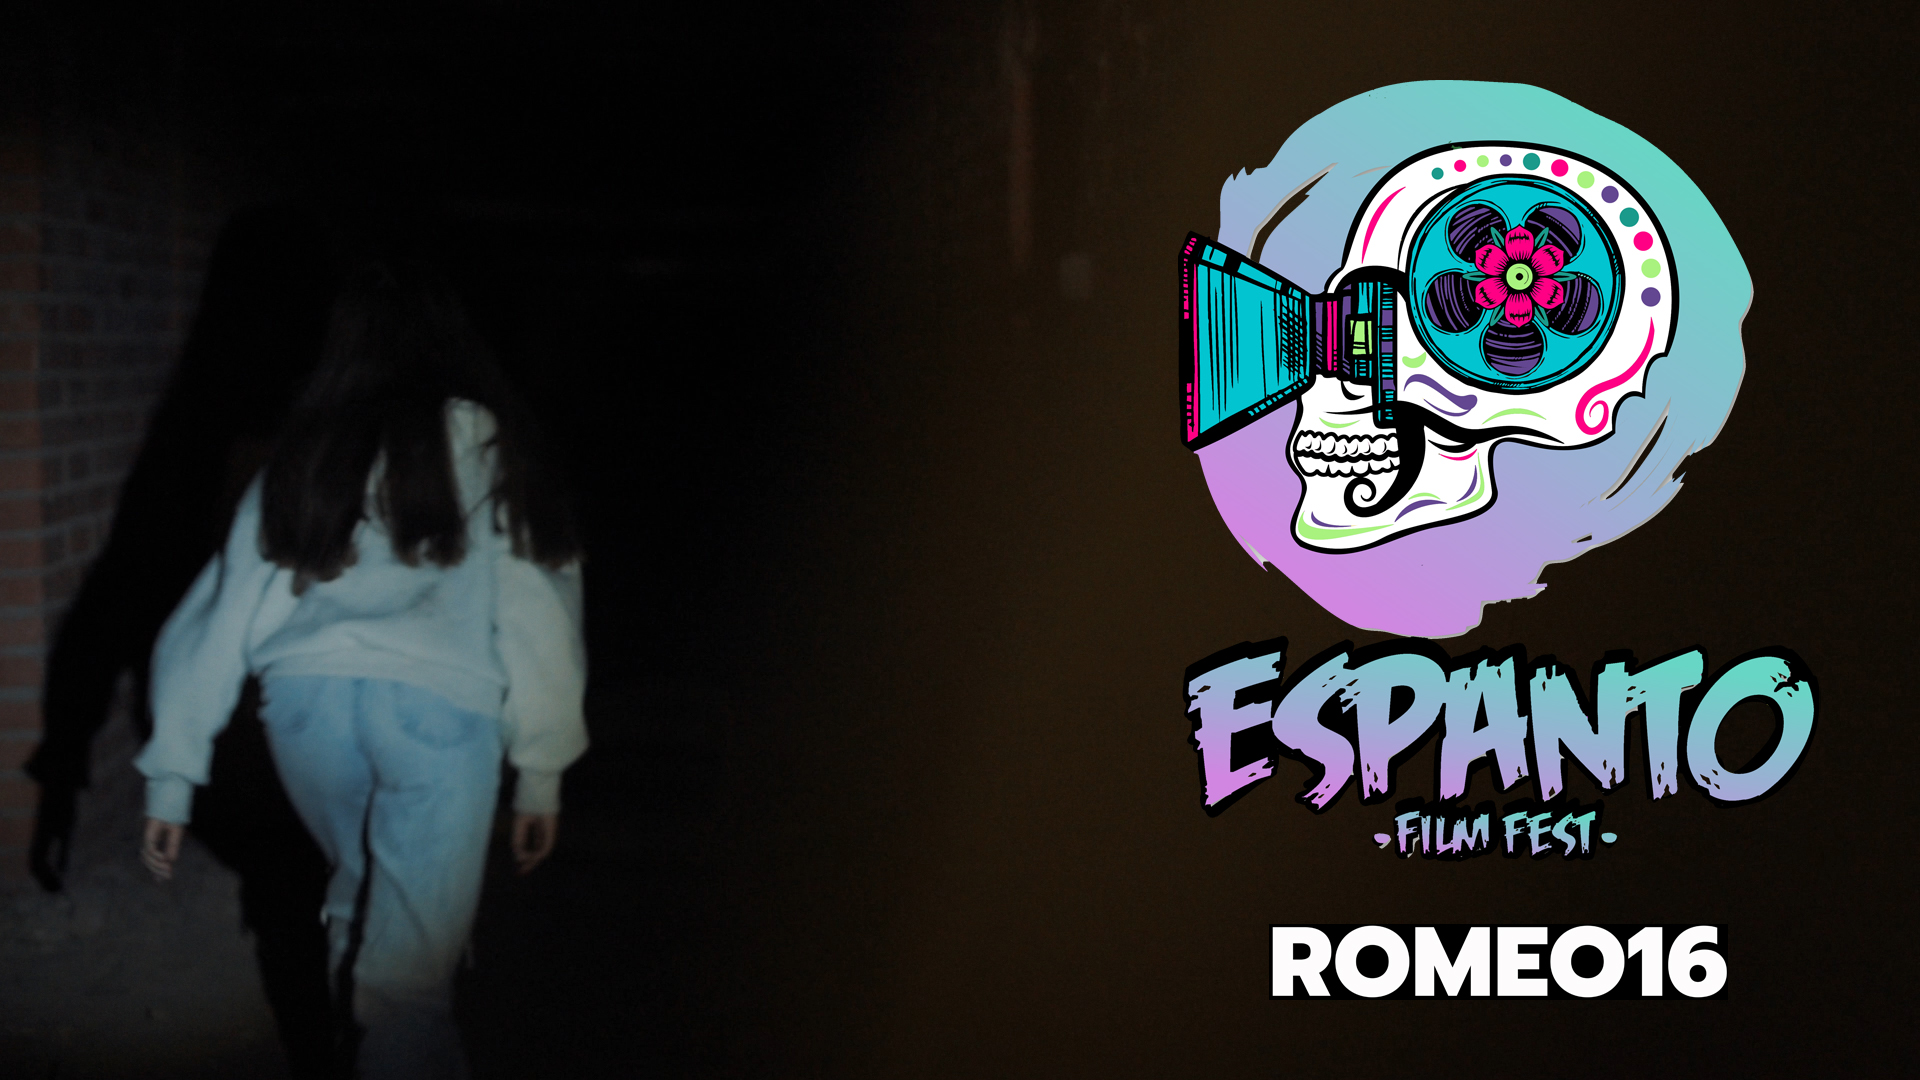 Espanto Film Fest